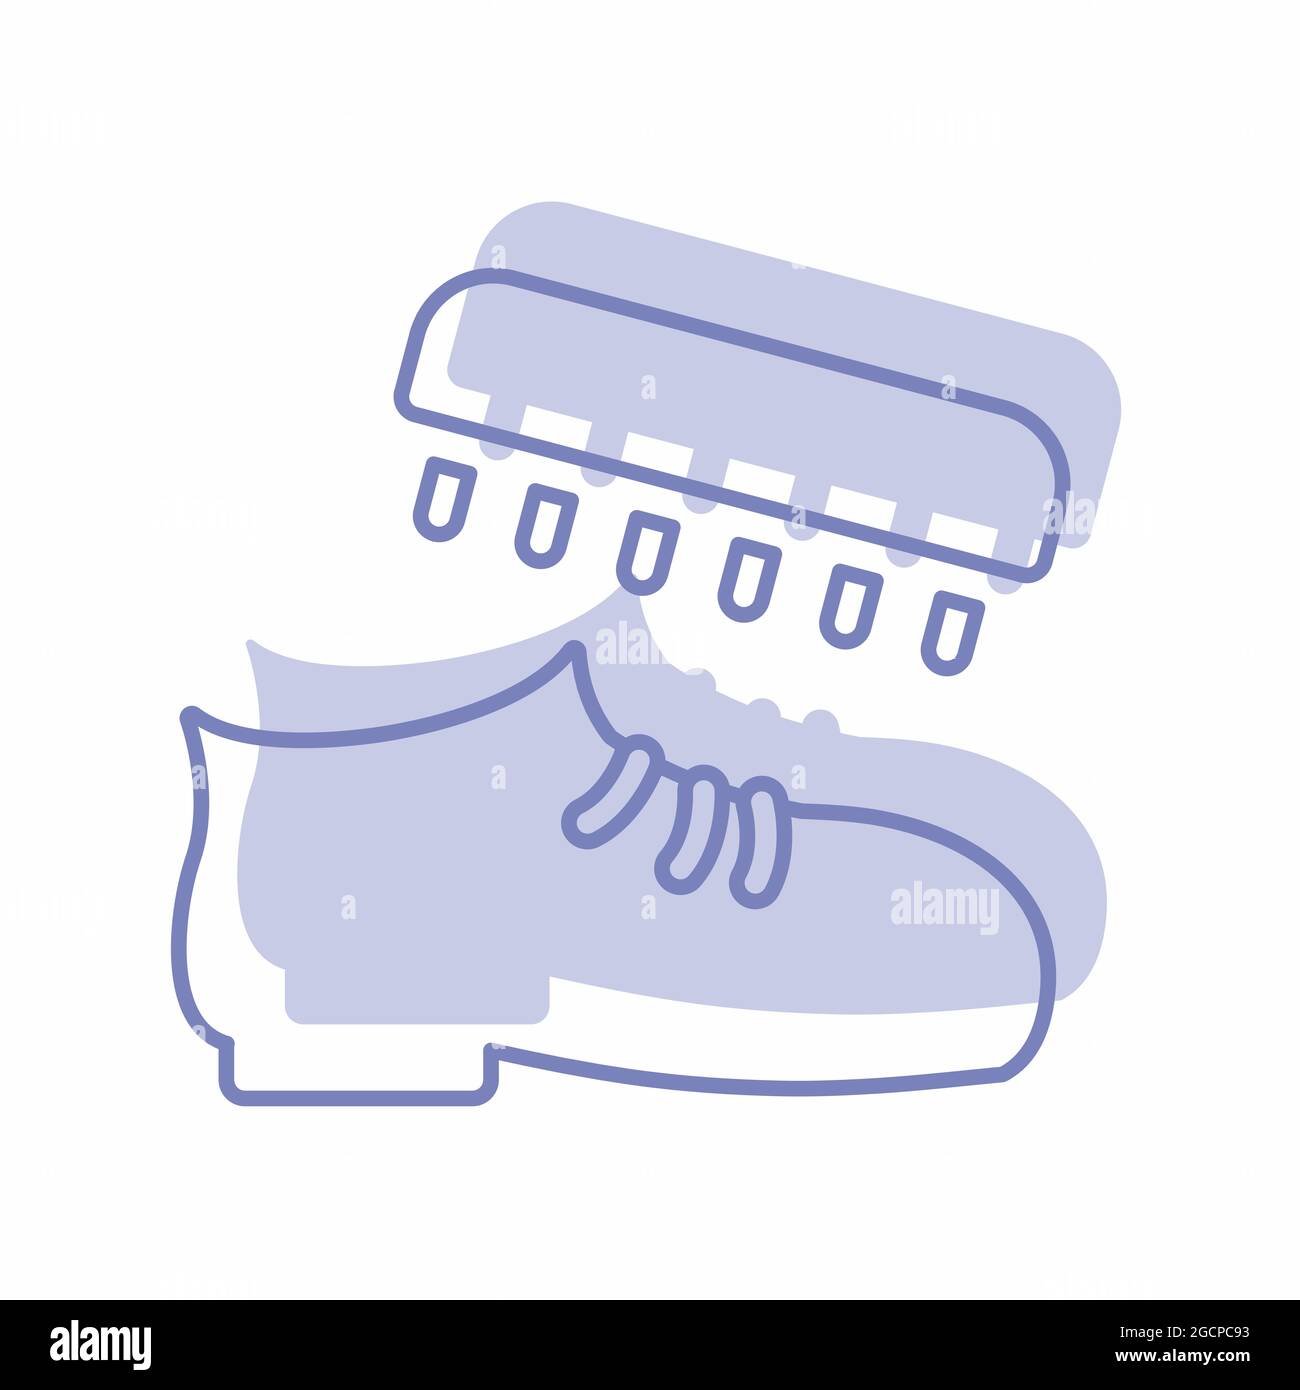 Motif vectoriel de polissage de chaussures - style Twins - illustration simple. Contour modifiable. Modèle de conception vector.Outline style design.Vector Graphic illu Illustration de Vecteur